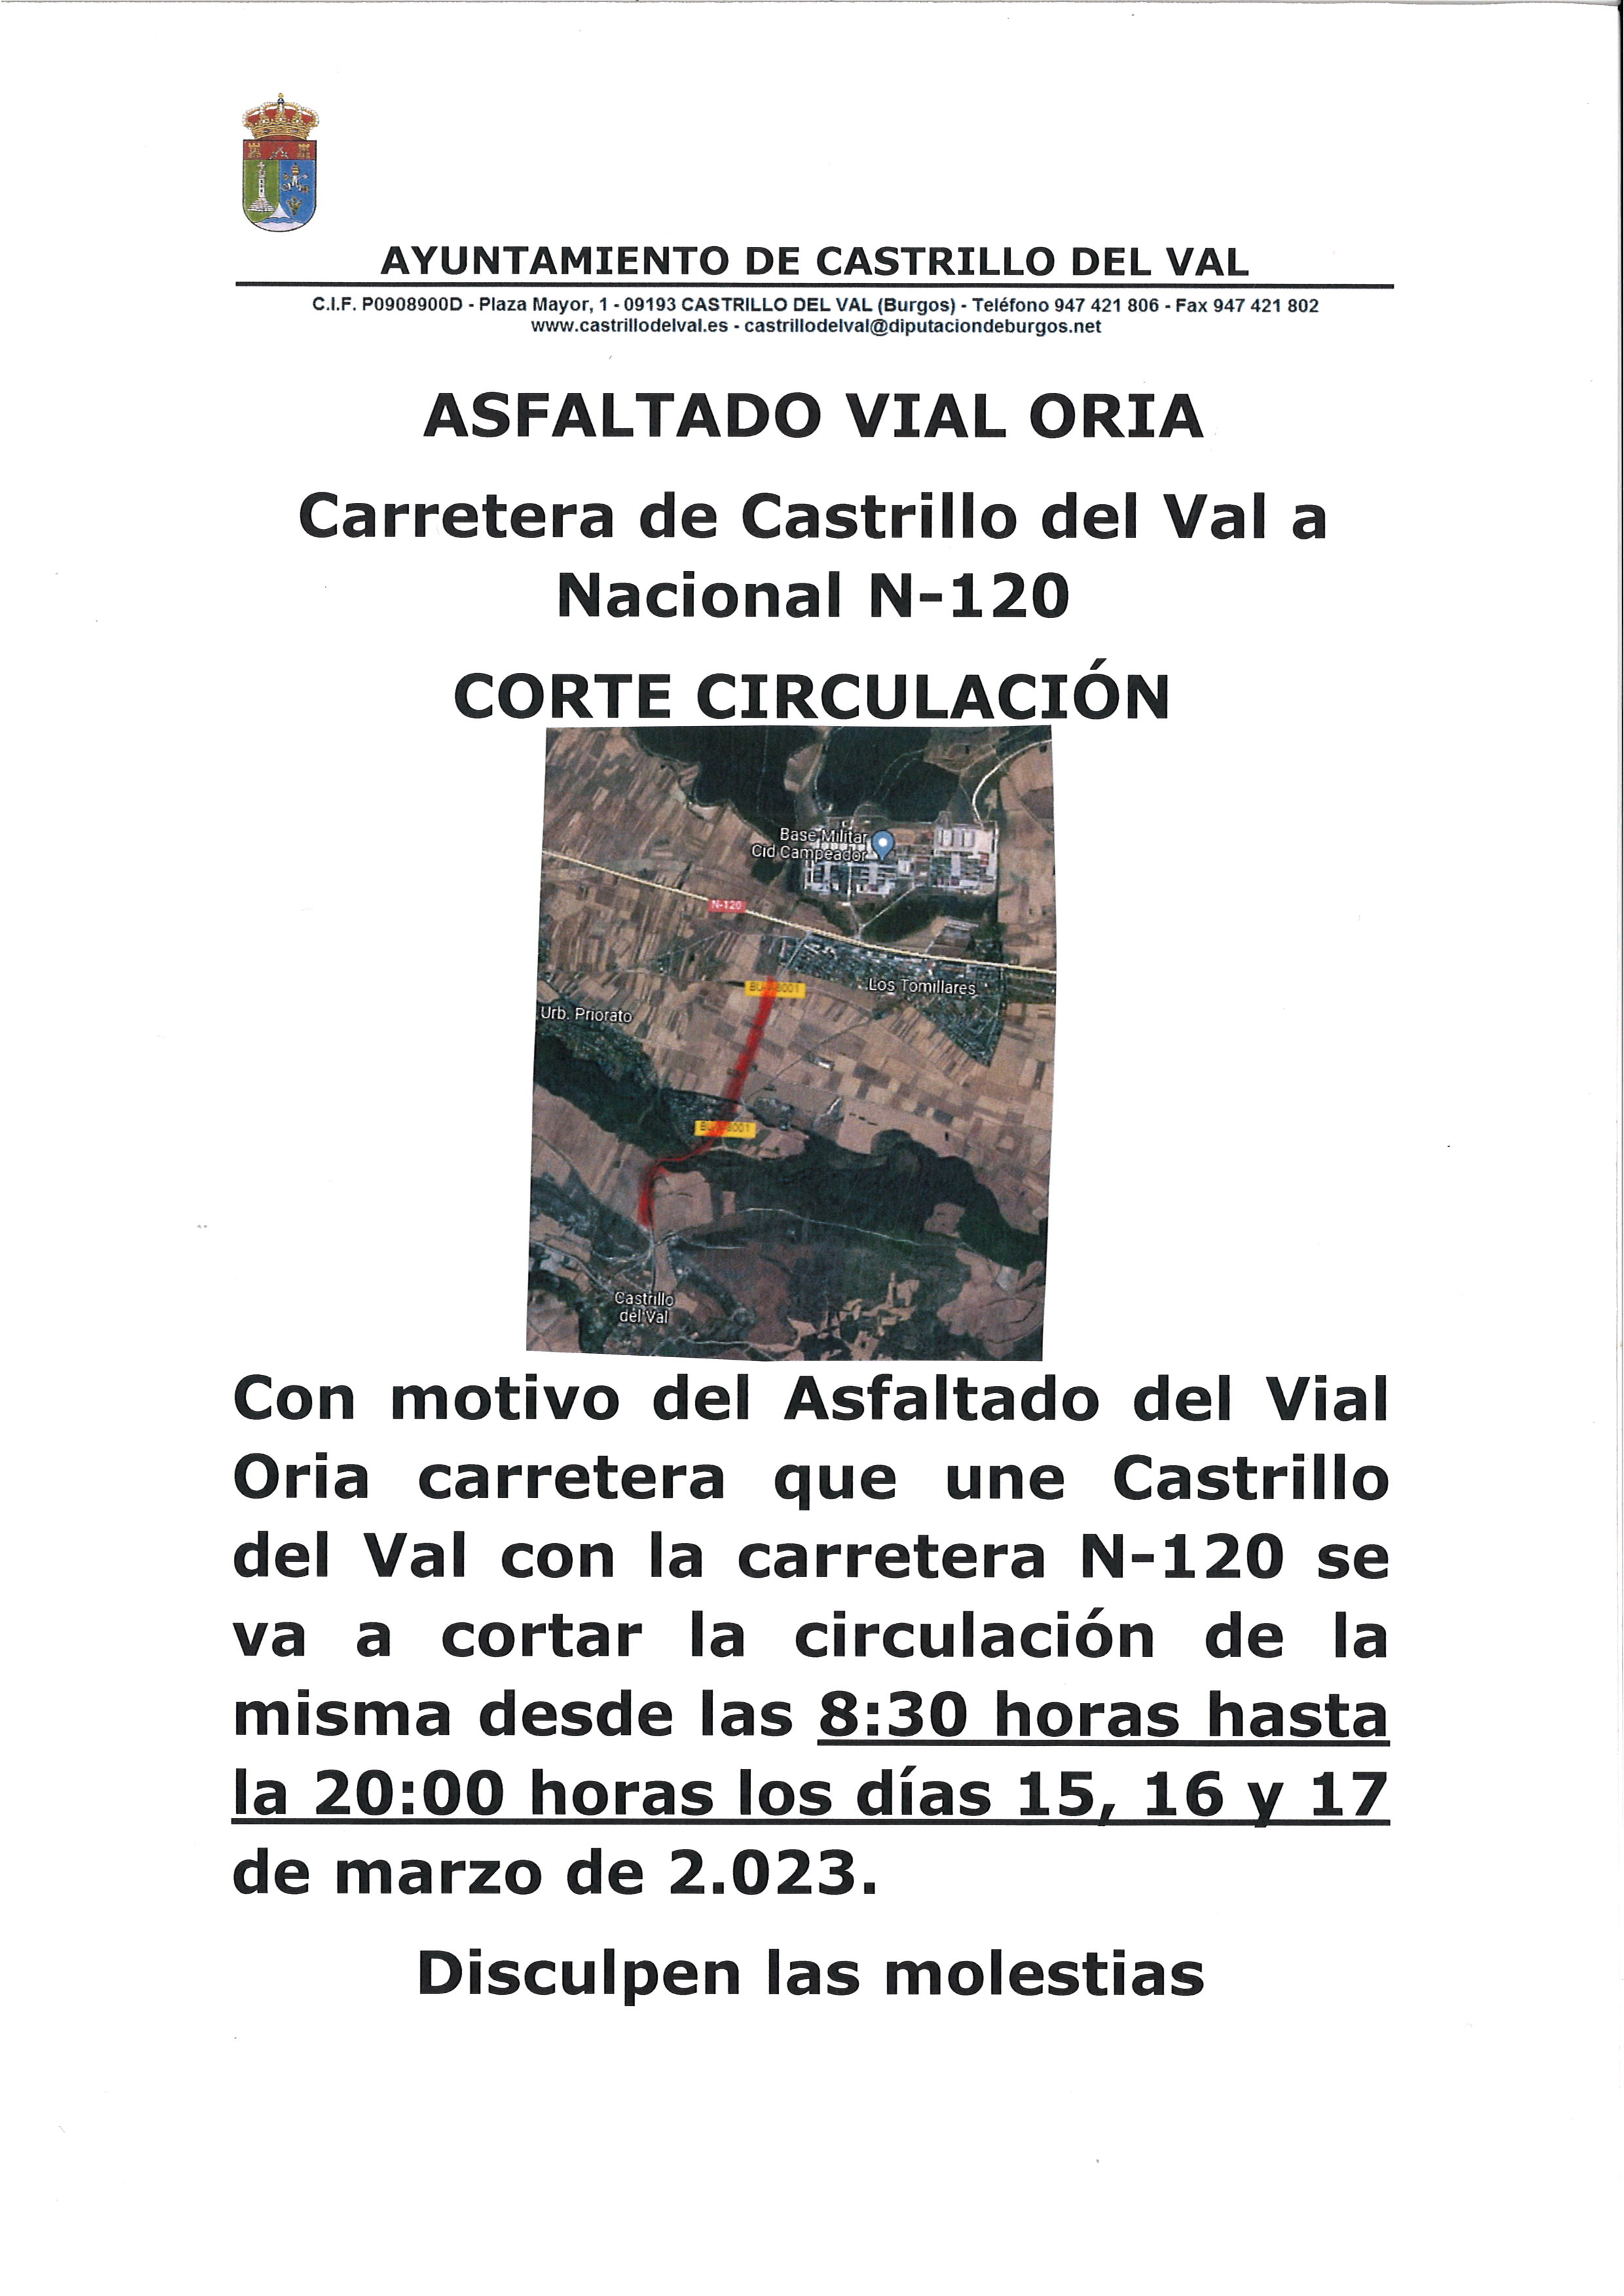 CORTES CARRETERA ORIA DE CASTRILLO DEL VAL A N-120